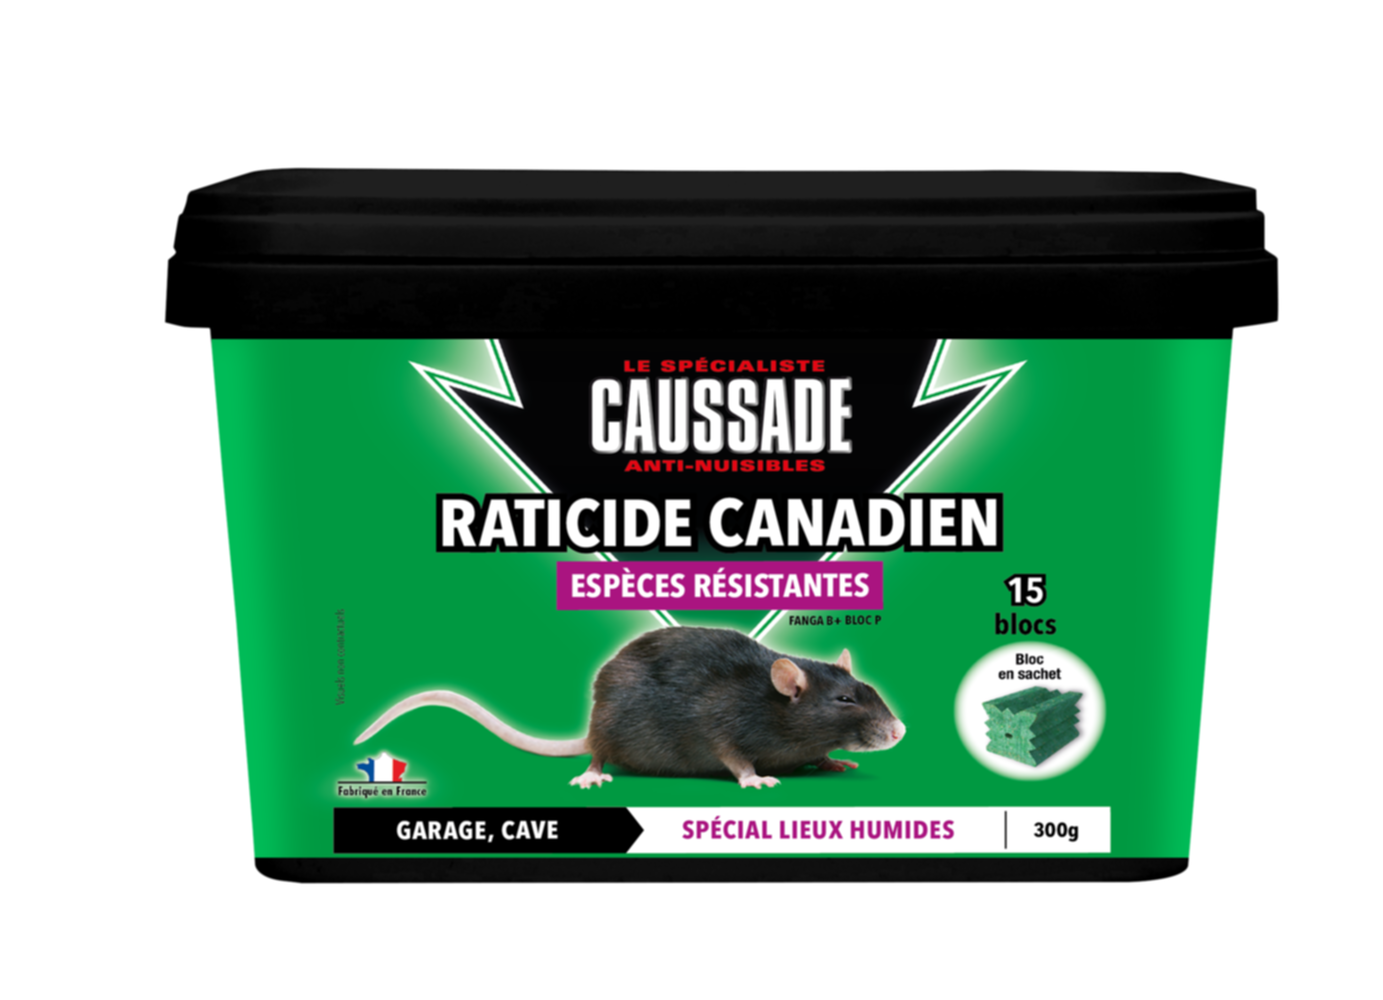 Raticide canadien blocs espèces résistantes 15x20gr - CAUSSADE 